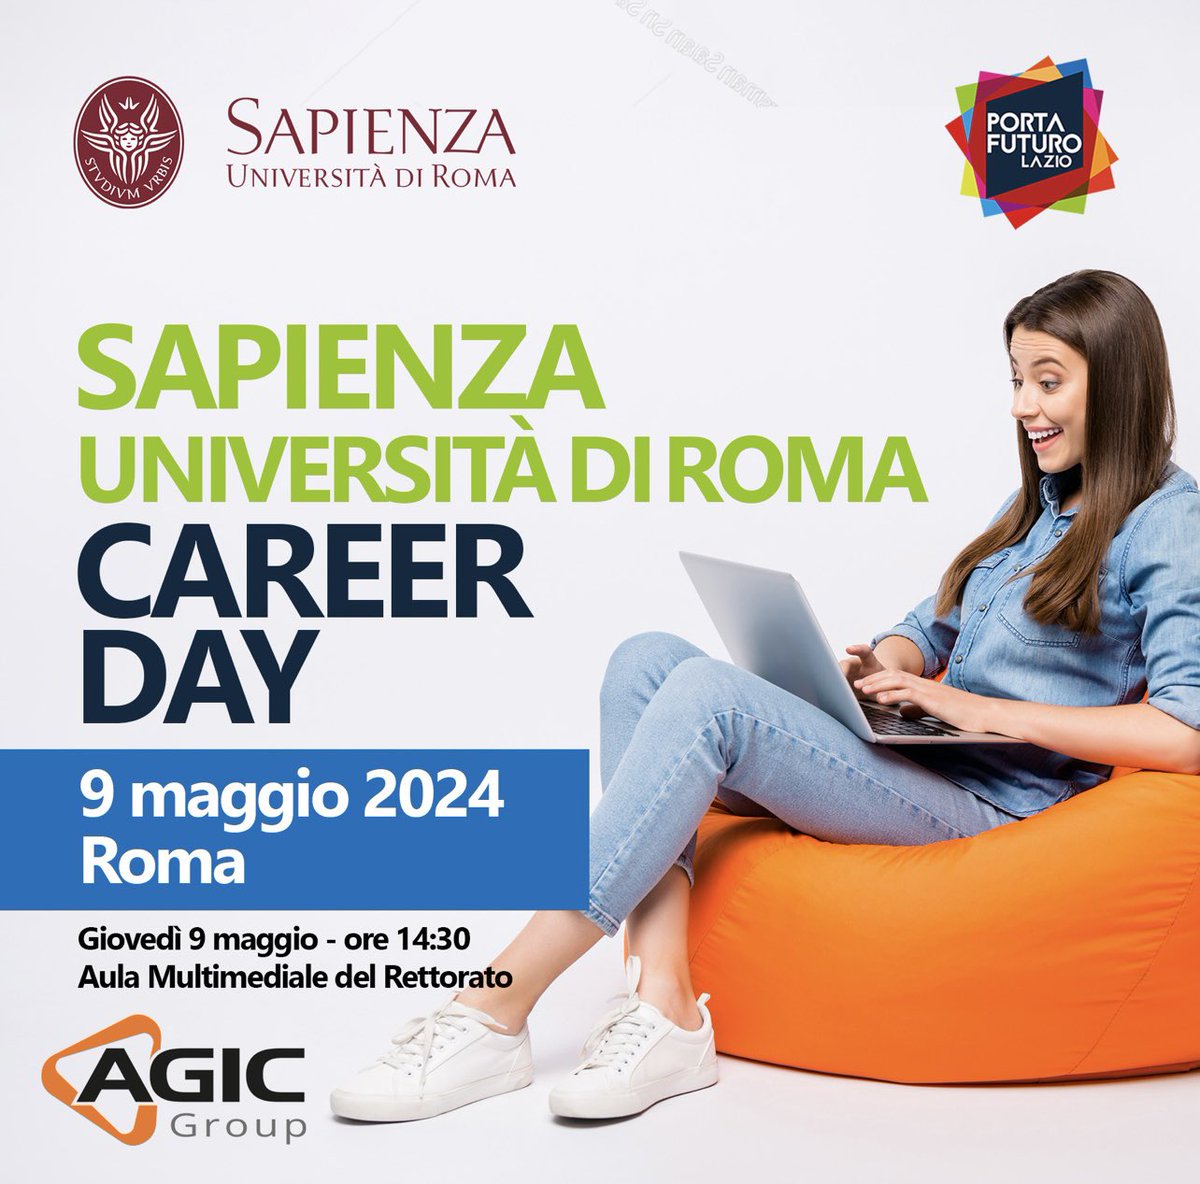 Nuovo Career Day Agic Technology  
📍Sapienza Università di Roma  
🗓️ 9 maggio 2024
🕜 14.30

✔️Prenota qui il tuo posto > uniroma1.jobteaser.com/it/events/2155…

#careerday #hr #hiringnow #hiring #agictechnology #agicgroup #recruiting